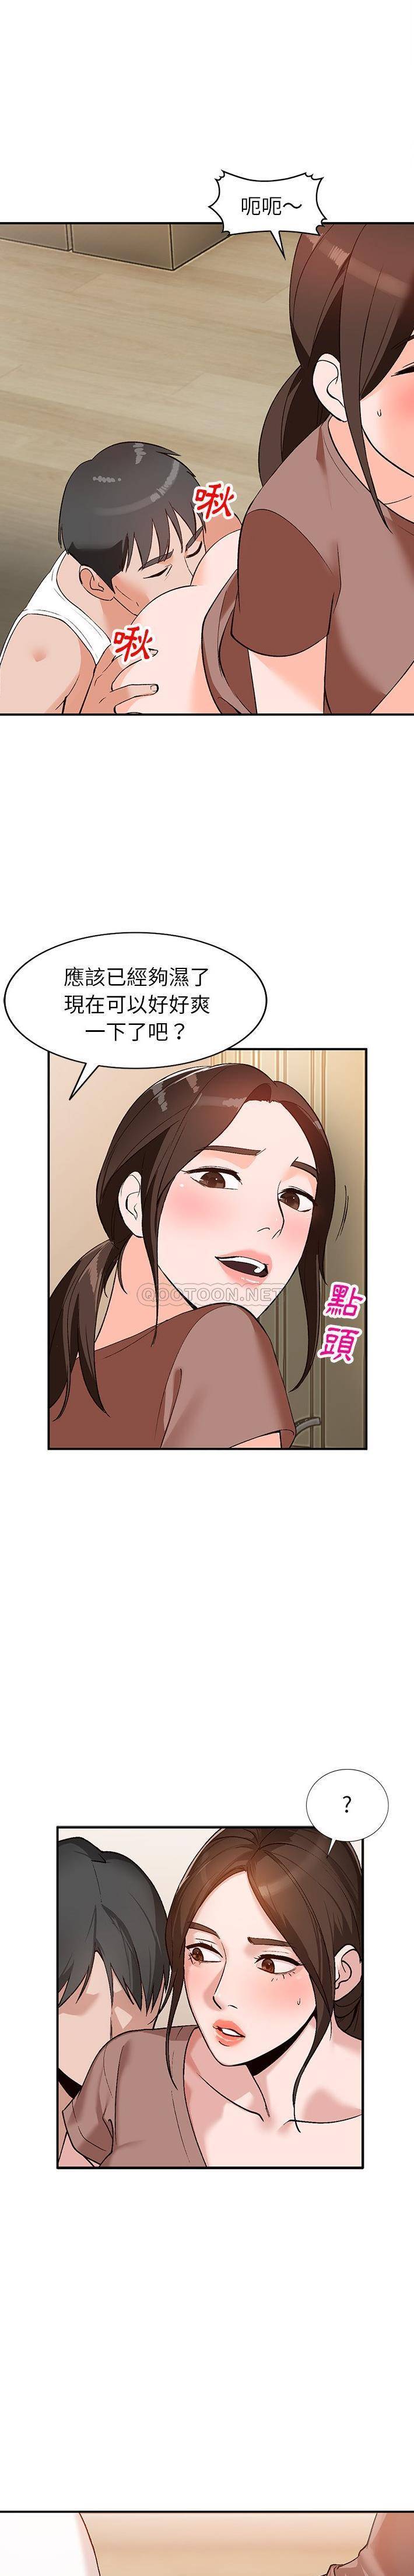 韩国污漫画 她們的小秘密(小鎮上的女人們) 第3话 4